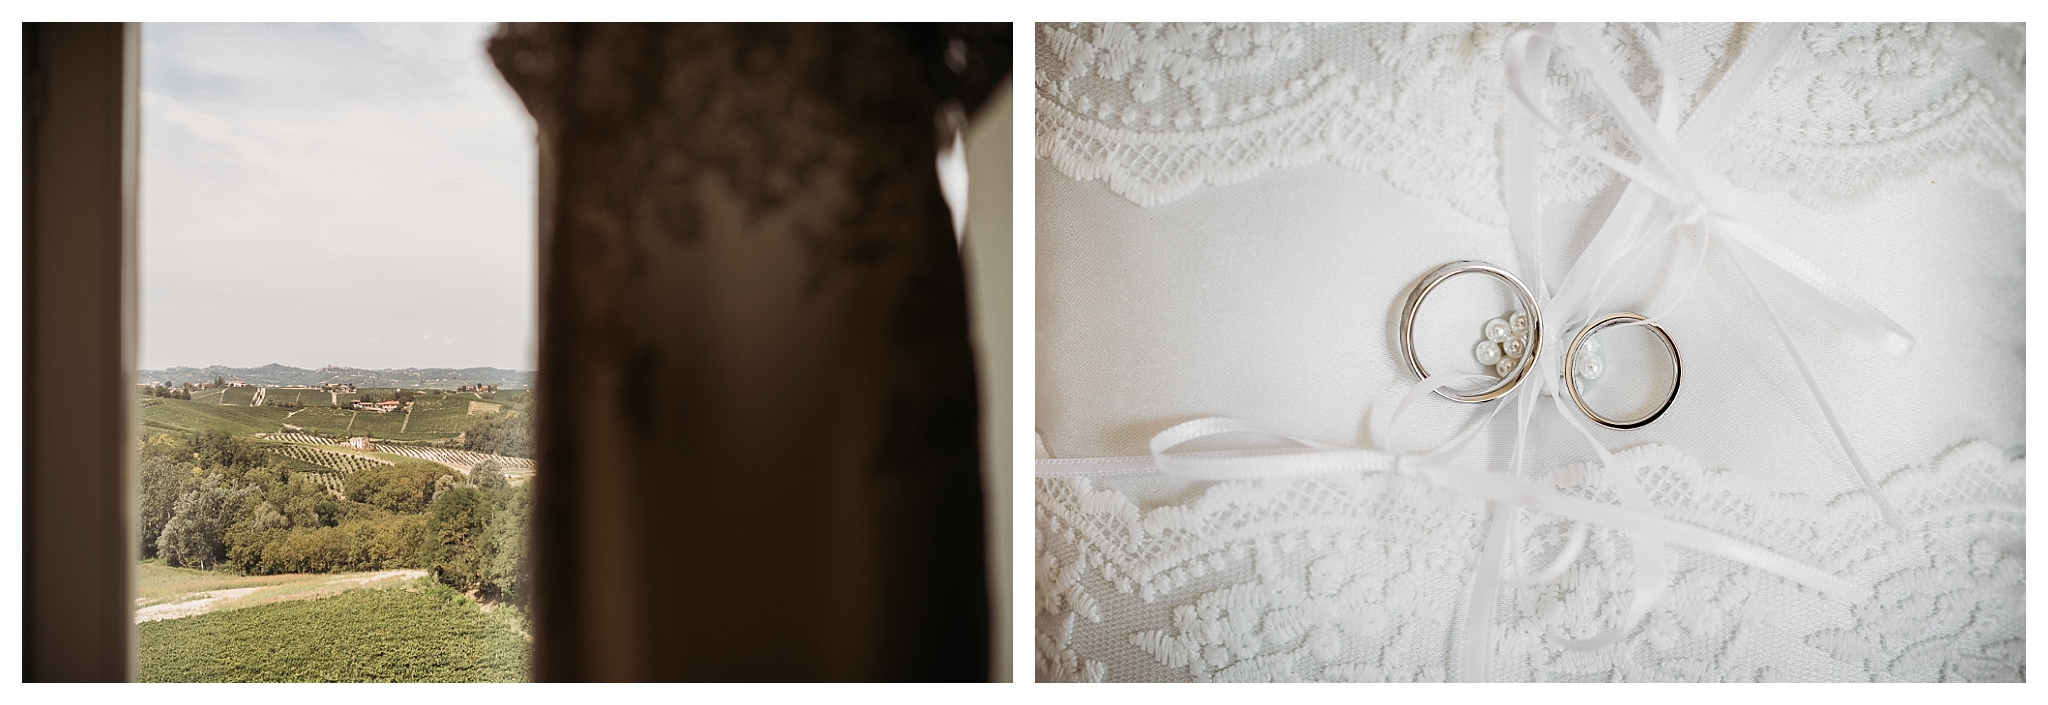 white embroidered wedding dress at La Villa Hotel, Mombaruzzo